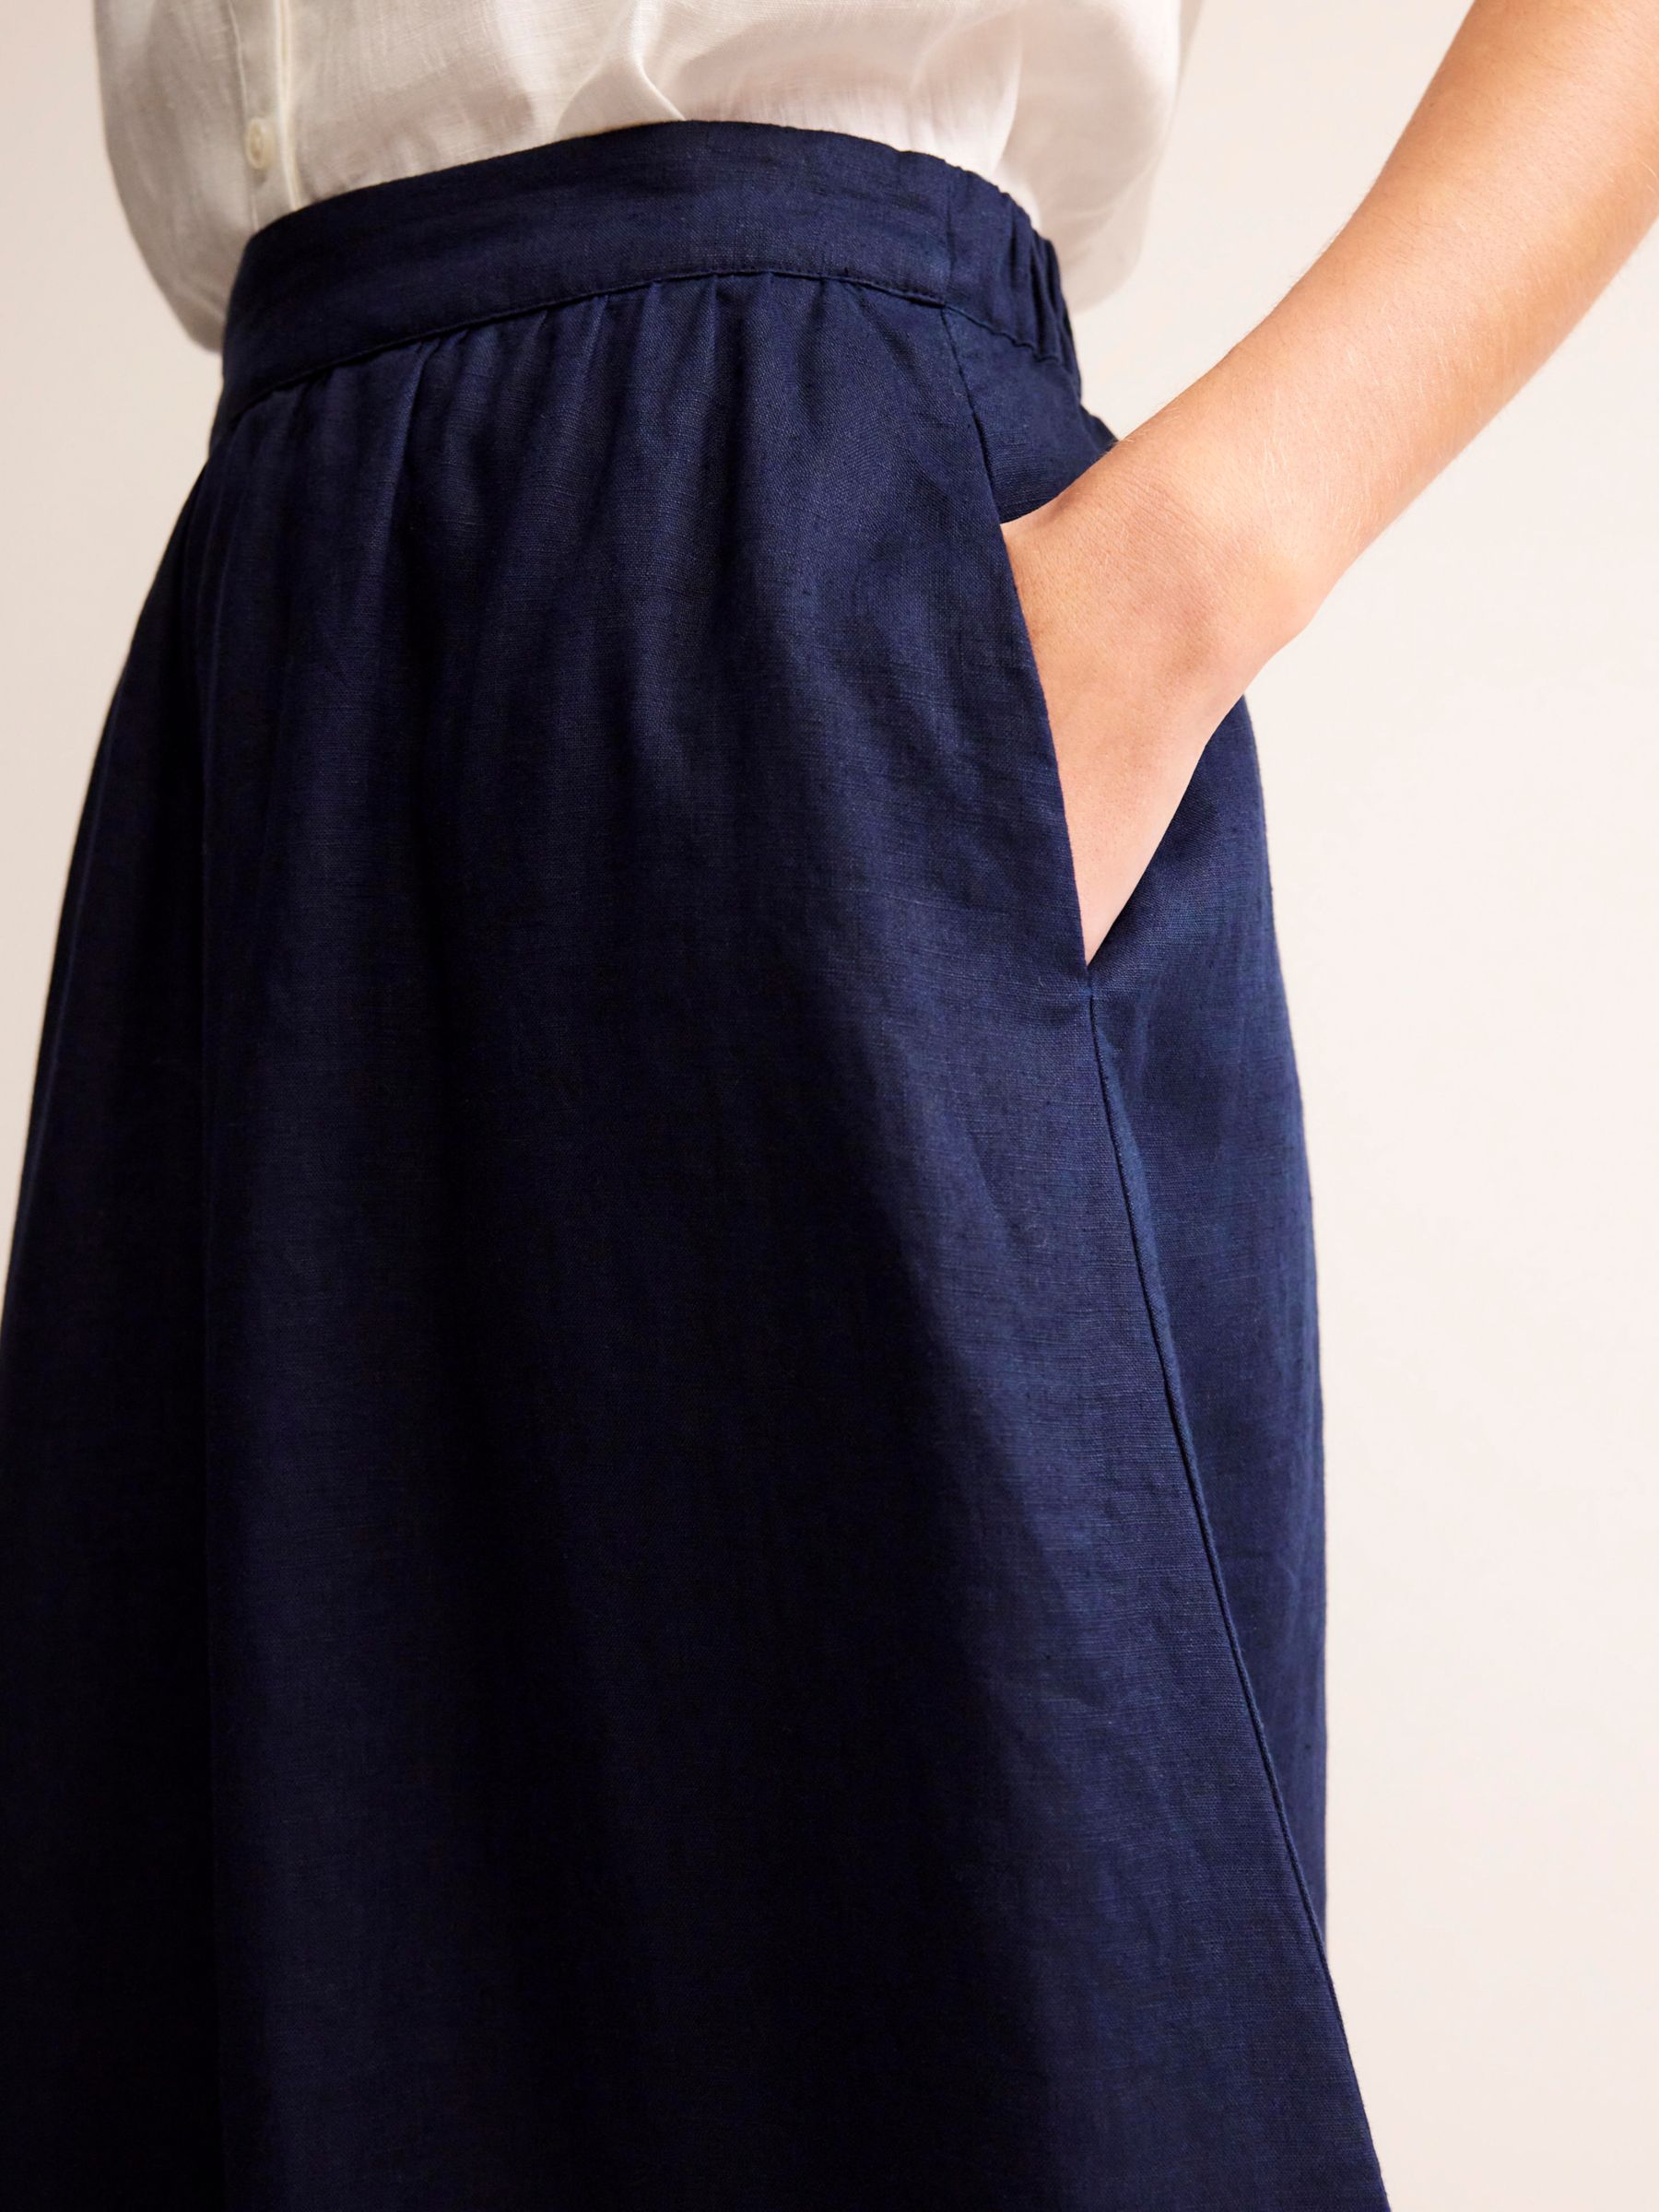 Boden Florence Linen Midi Skirt, Navy, 8